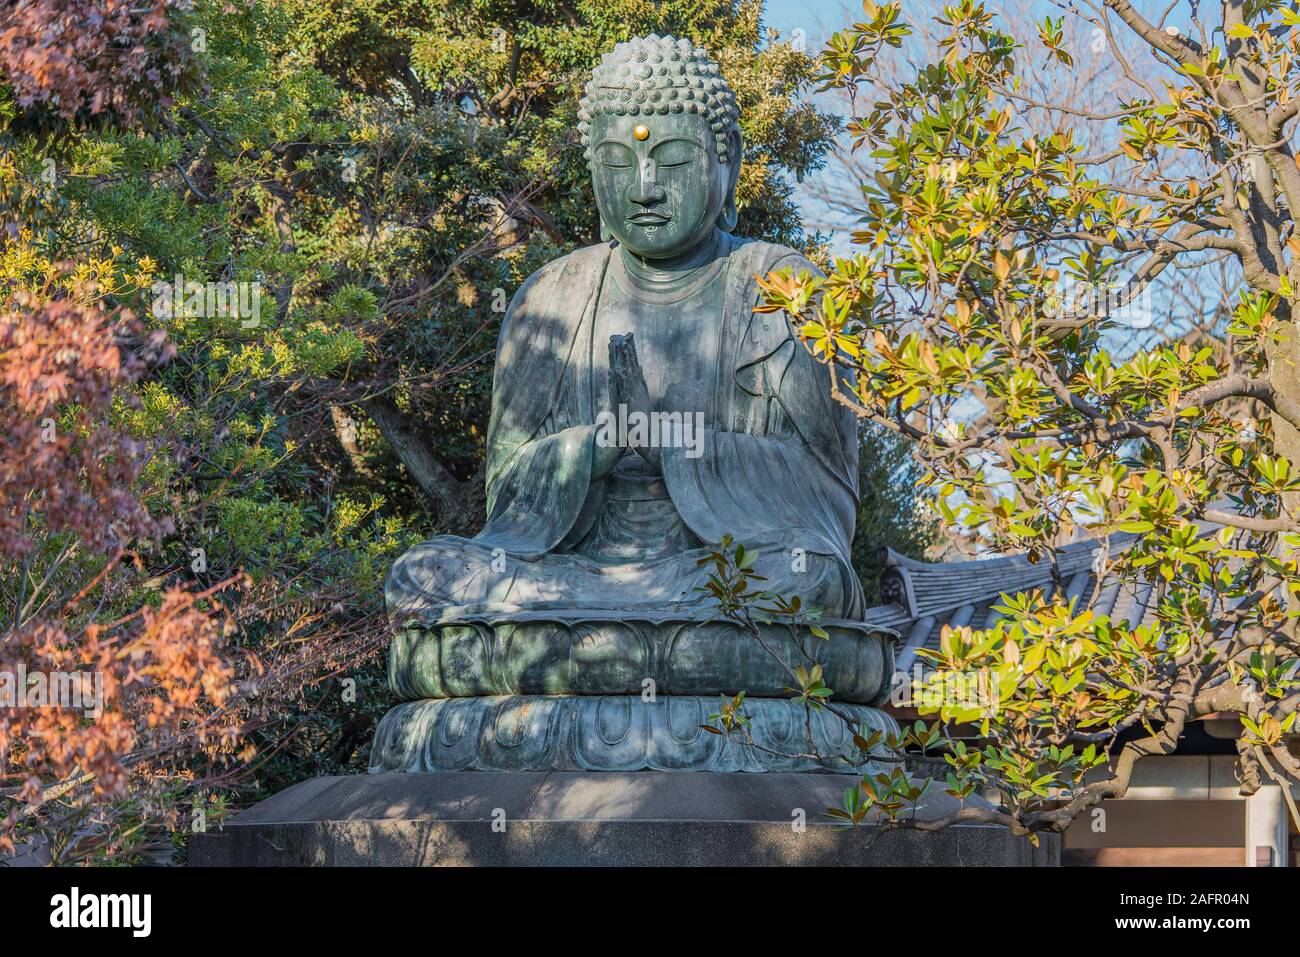 Giant bronze statue depicting the Buddha Shaka Nyorai in the Tendai Buddhism Tennoji temple in the Yanaka cemetery of Tokyo. Stock Photo